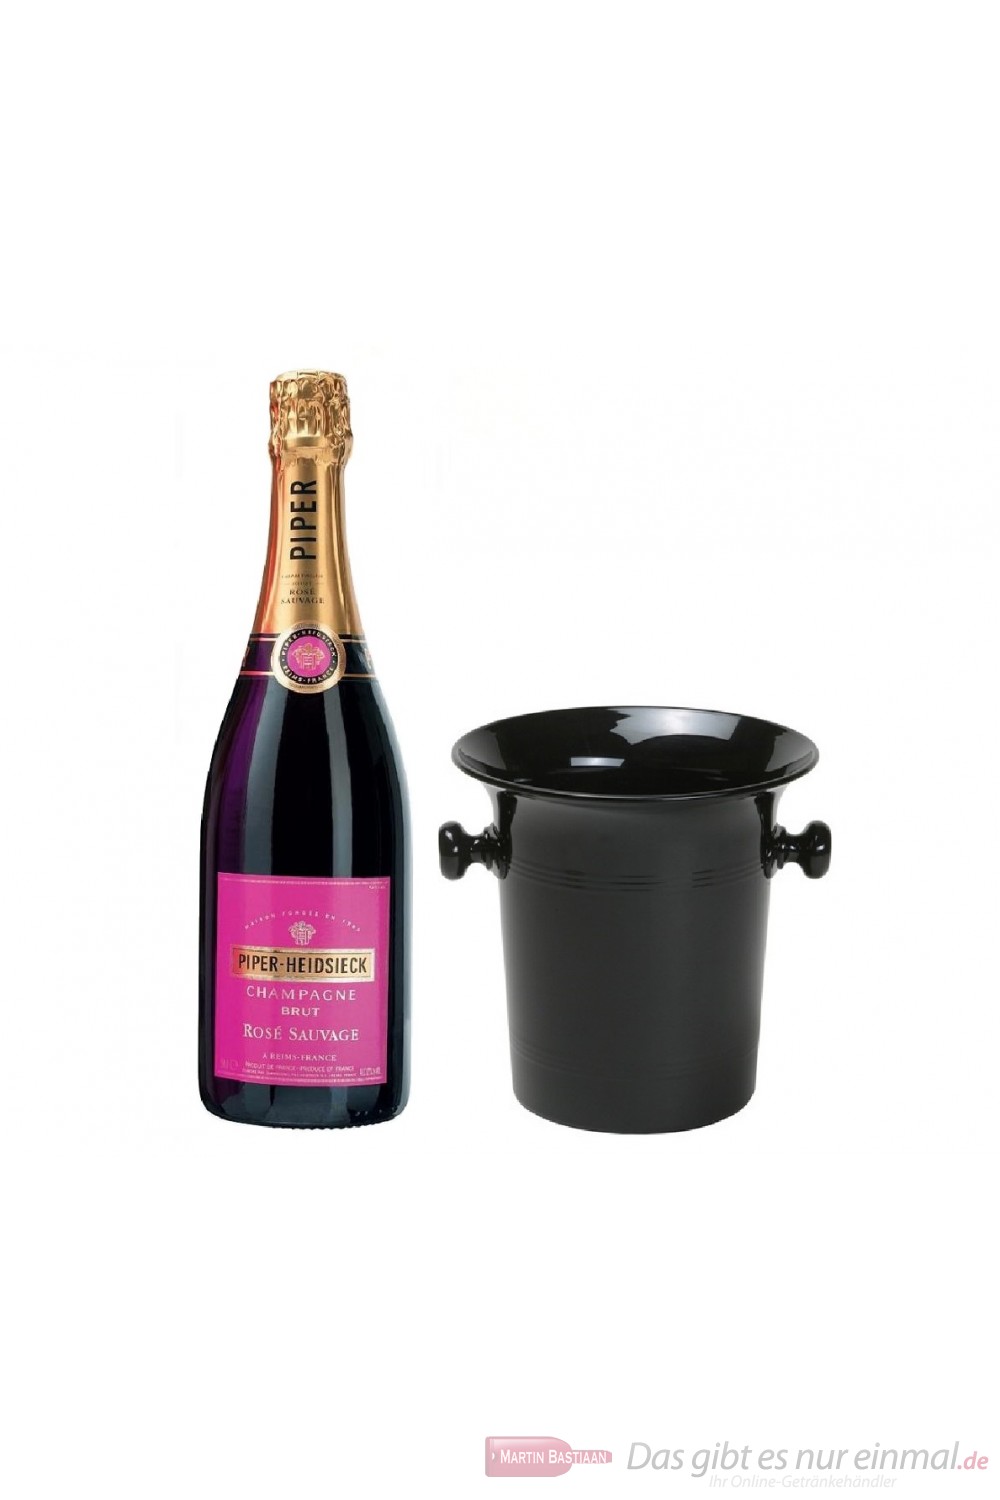 Piper Heidsieck Rosé Sauvage im Champagner Kübel 0,75l